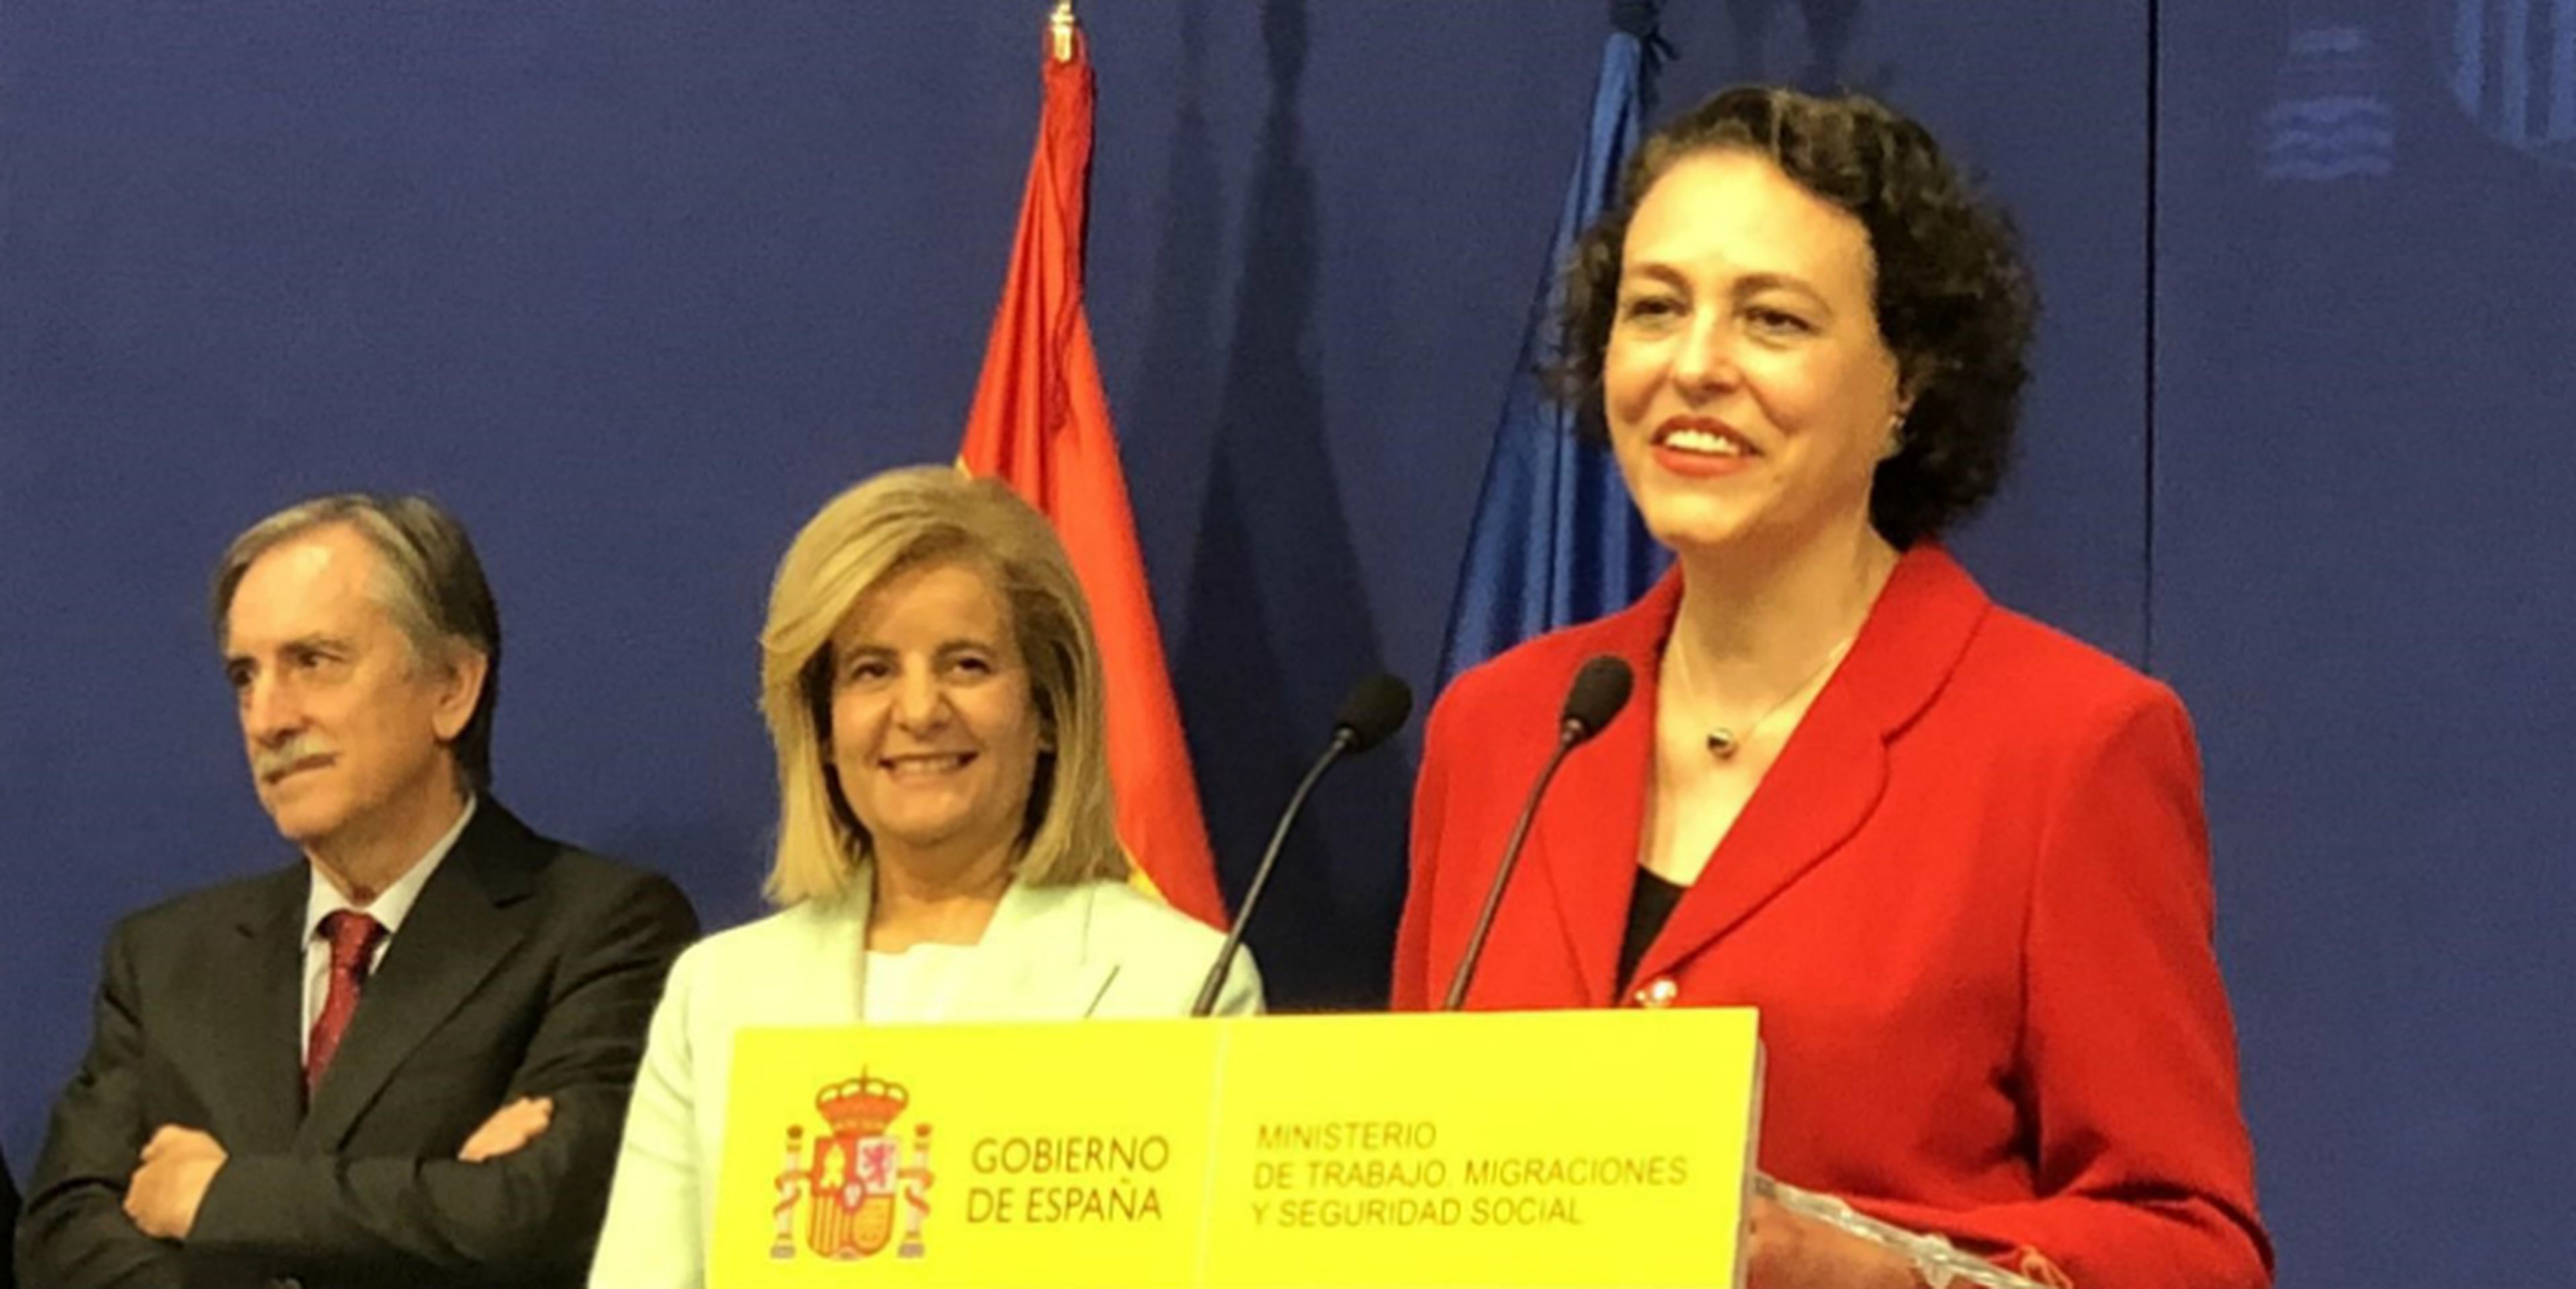 La nueva ministra de Trabajo, Magdalena Valerio, sucede a Fátima Ibánez en el cargo y asegura que una de sus prioridades es conseguir un "gran pacto" de pensiones.